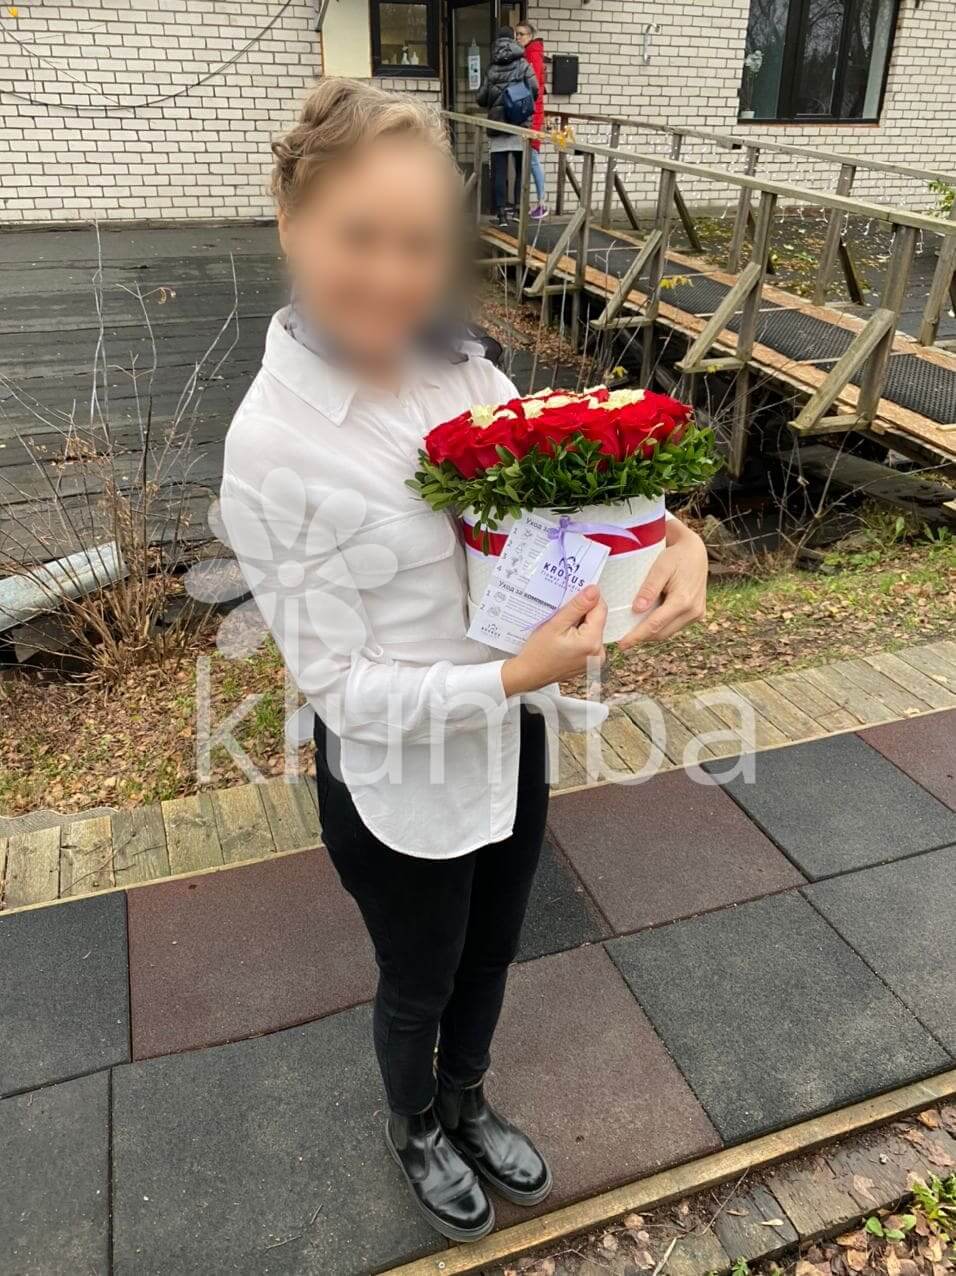 Доставка цветов в город Рига (стильная коробкабелые розыкрасные розы)